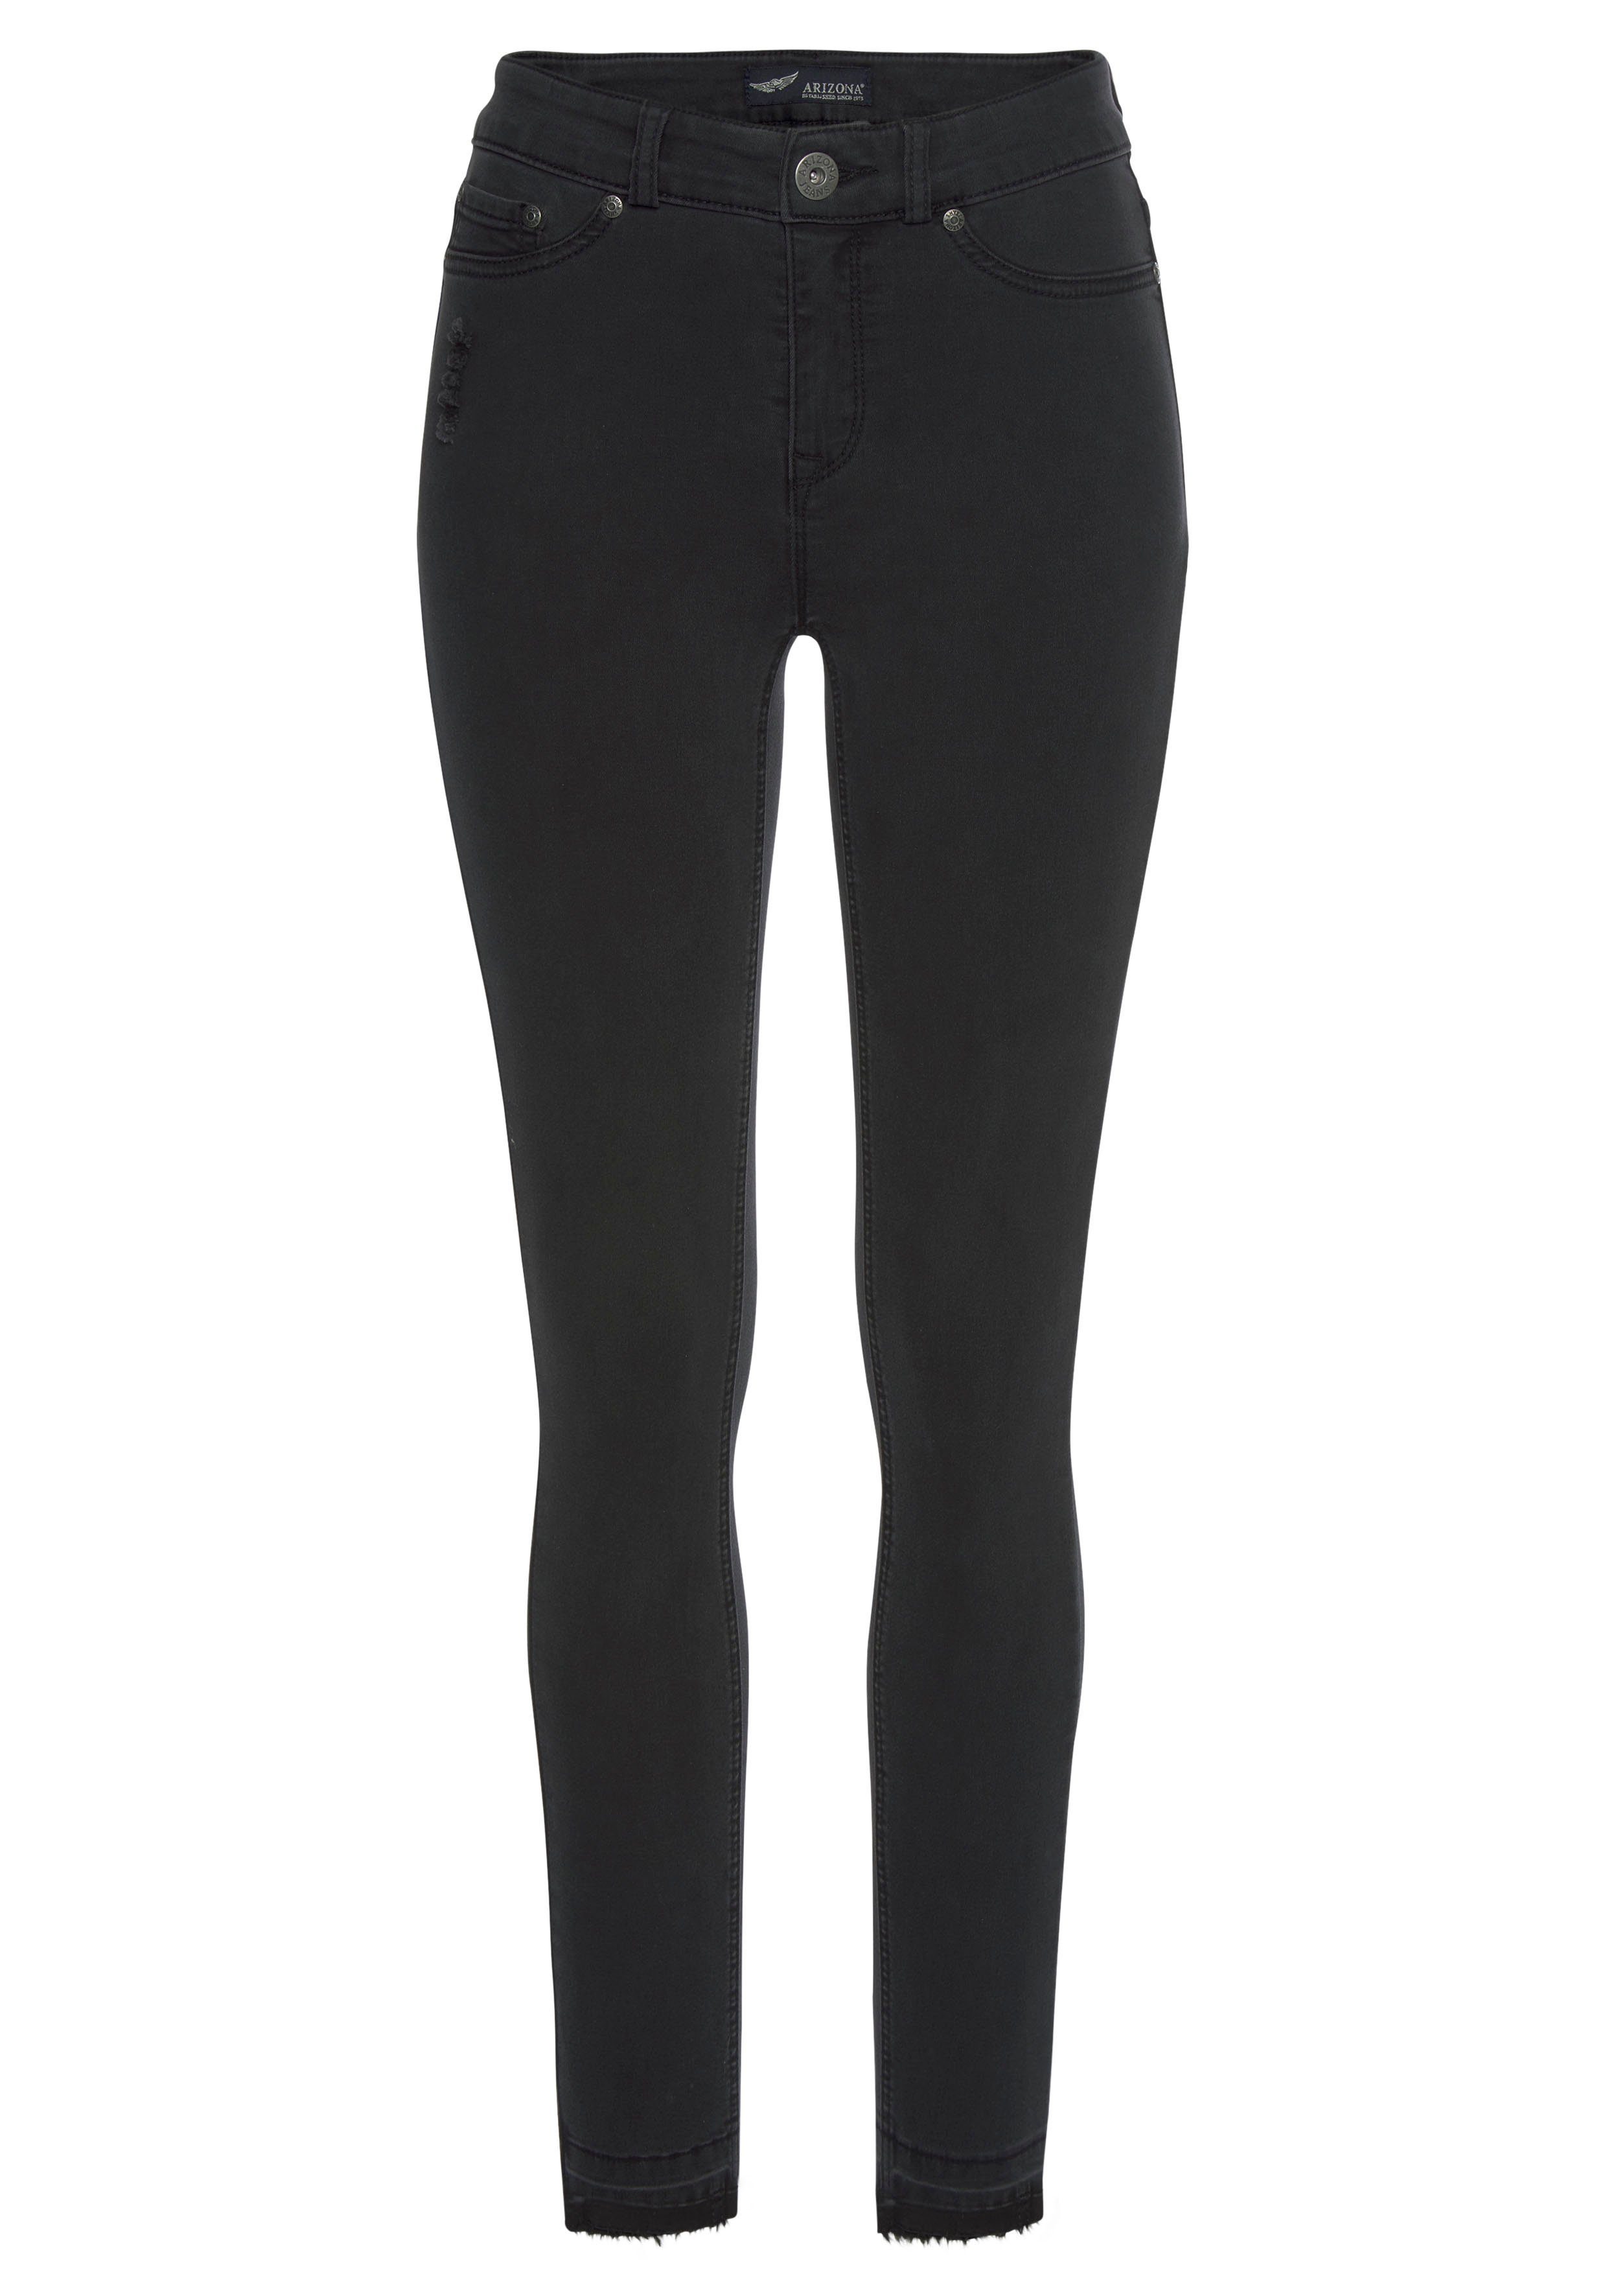 Arizona Skinny-fit-Jeans Ultra Waist High Saum dark-grey Stretch offenem mit